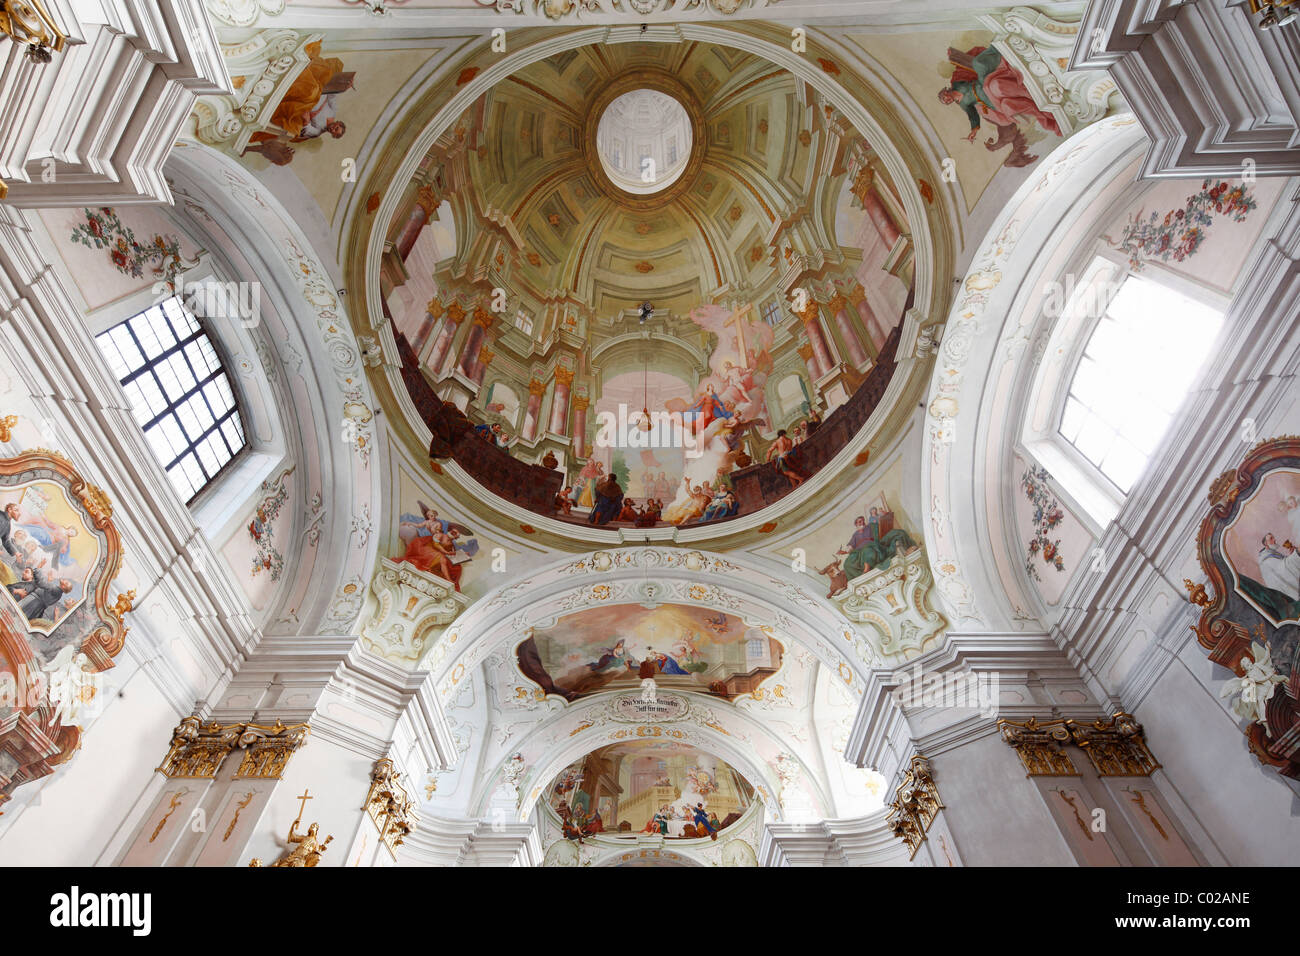 Ceiling frescoes, Maria Langegg pilgrimage church, Dunkelsteinerwald, Wachau, Mostviertel region, Lower Austria, Austria, Europe Stock Photo